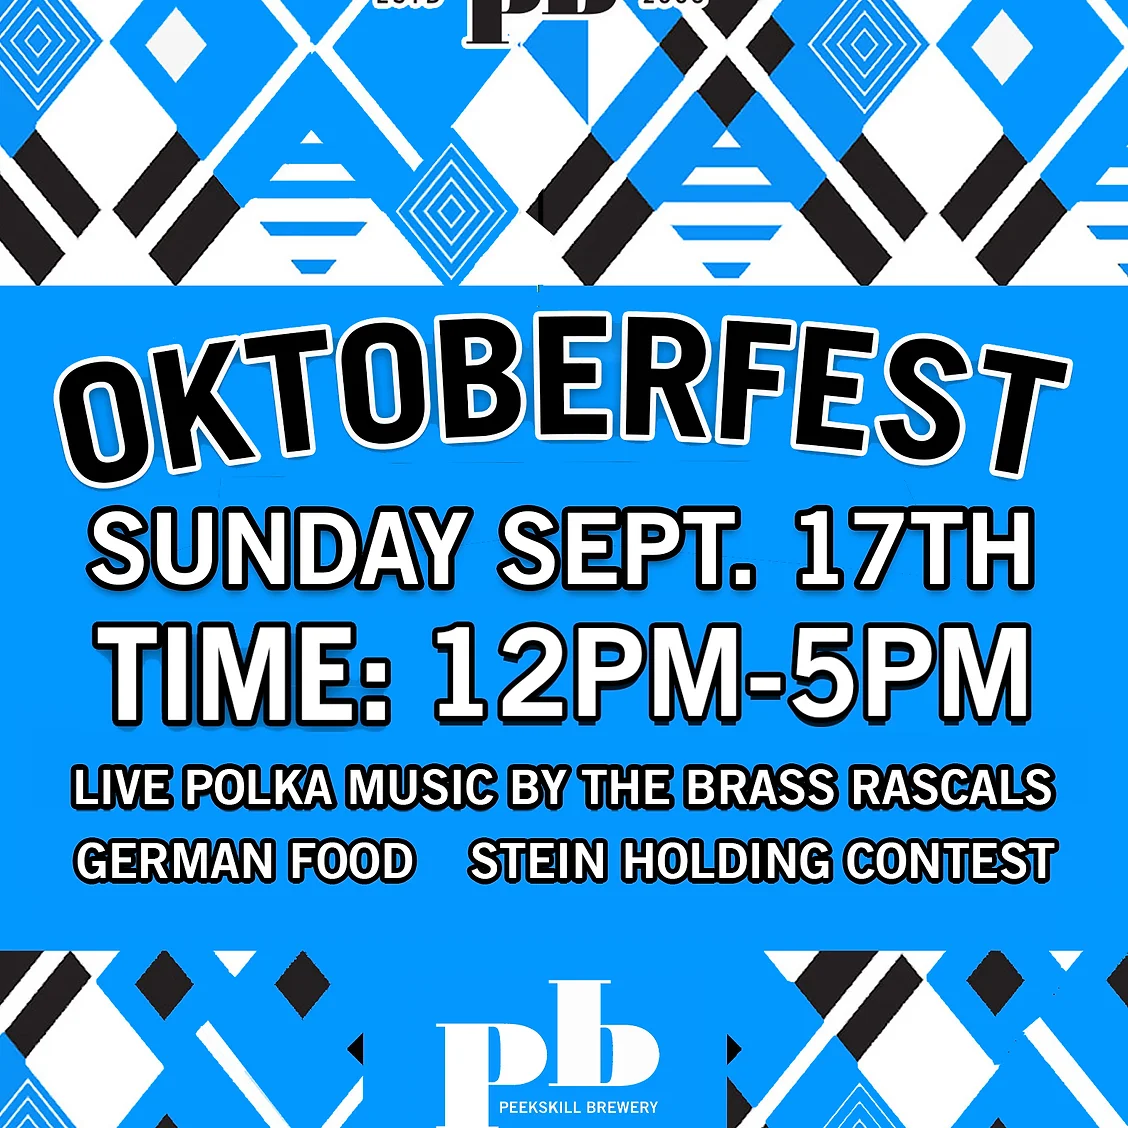 Flier for Peekskill Brewery Oktoberfest